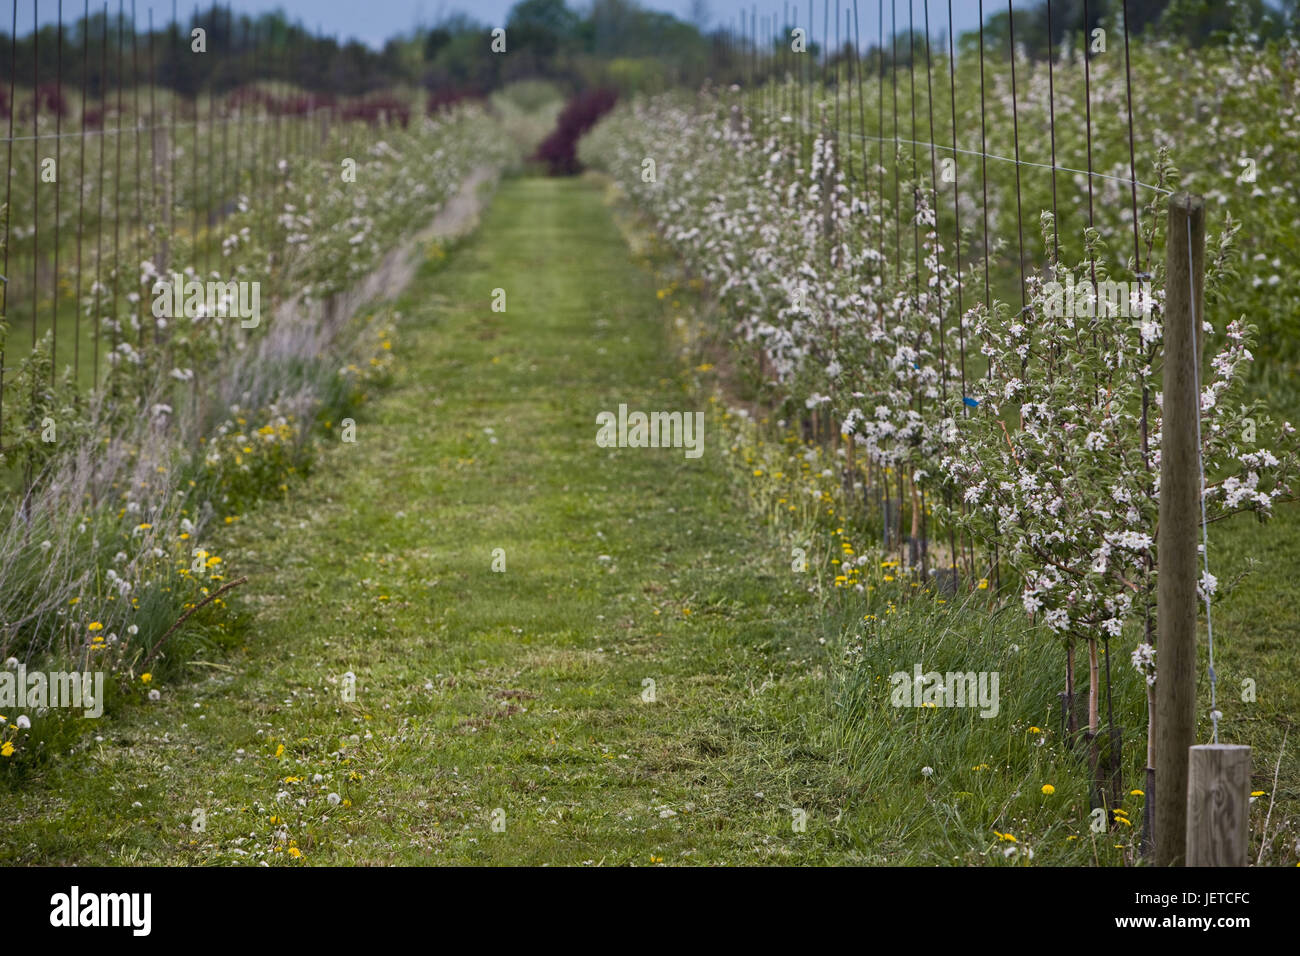 Plantation, fruit-trees, blossom, Stock Photo